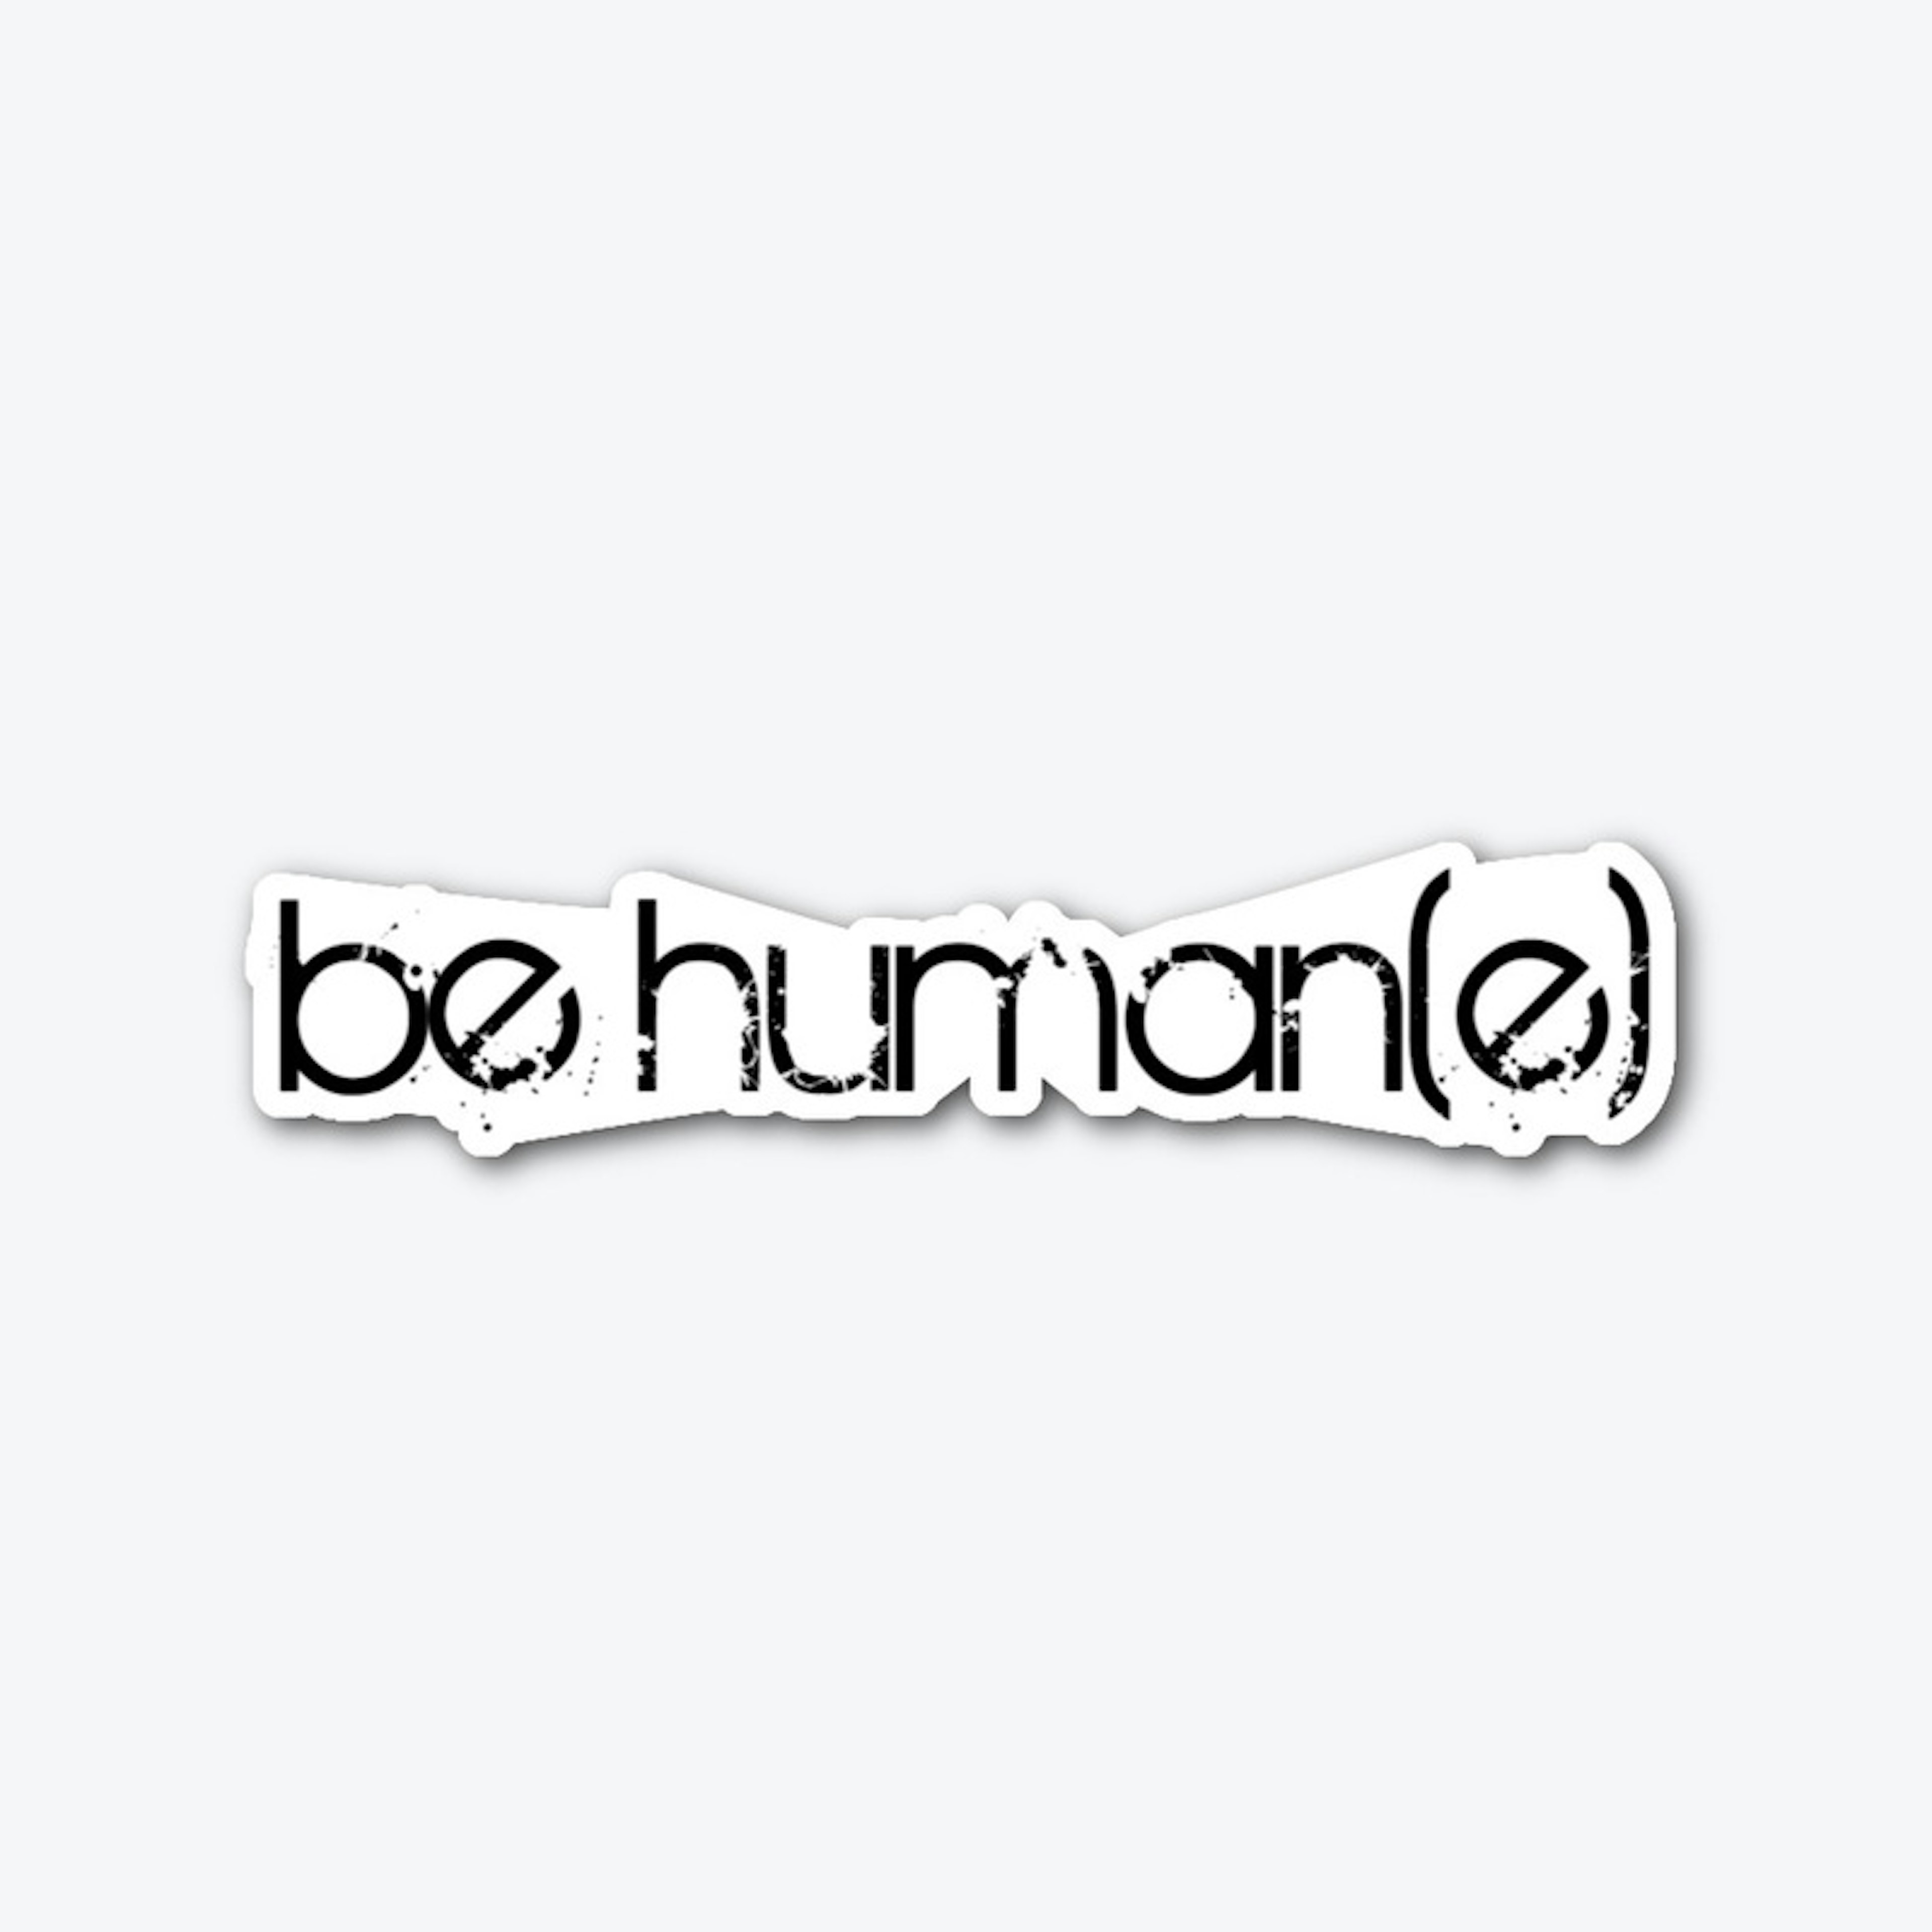 be human(e)